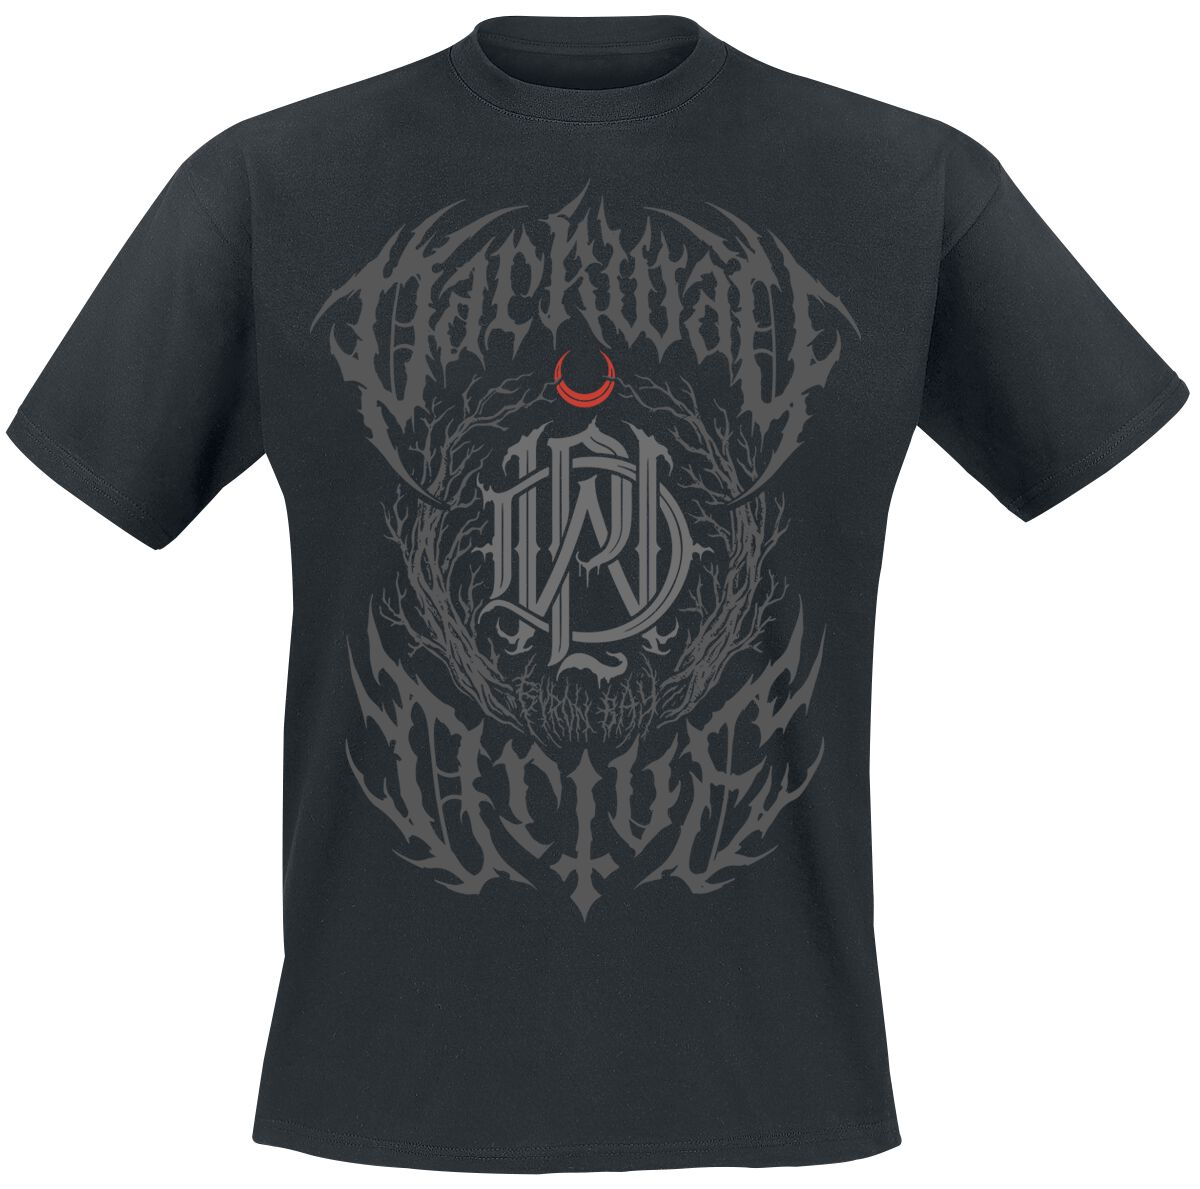 Parkway Drive T-Shirt - Metal Crest - S bis XXL - für Männer - Größe XL - schwarz  - Lizenziertes Merchandise!